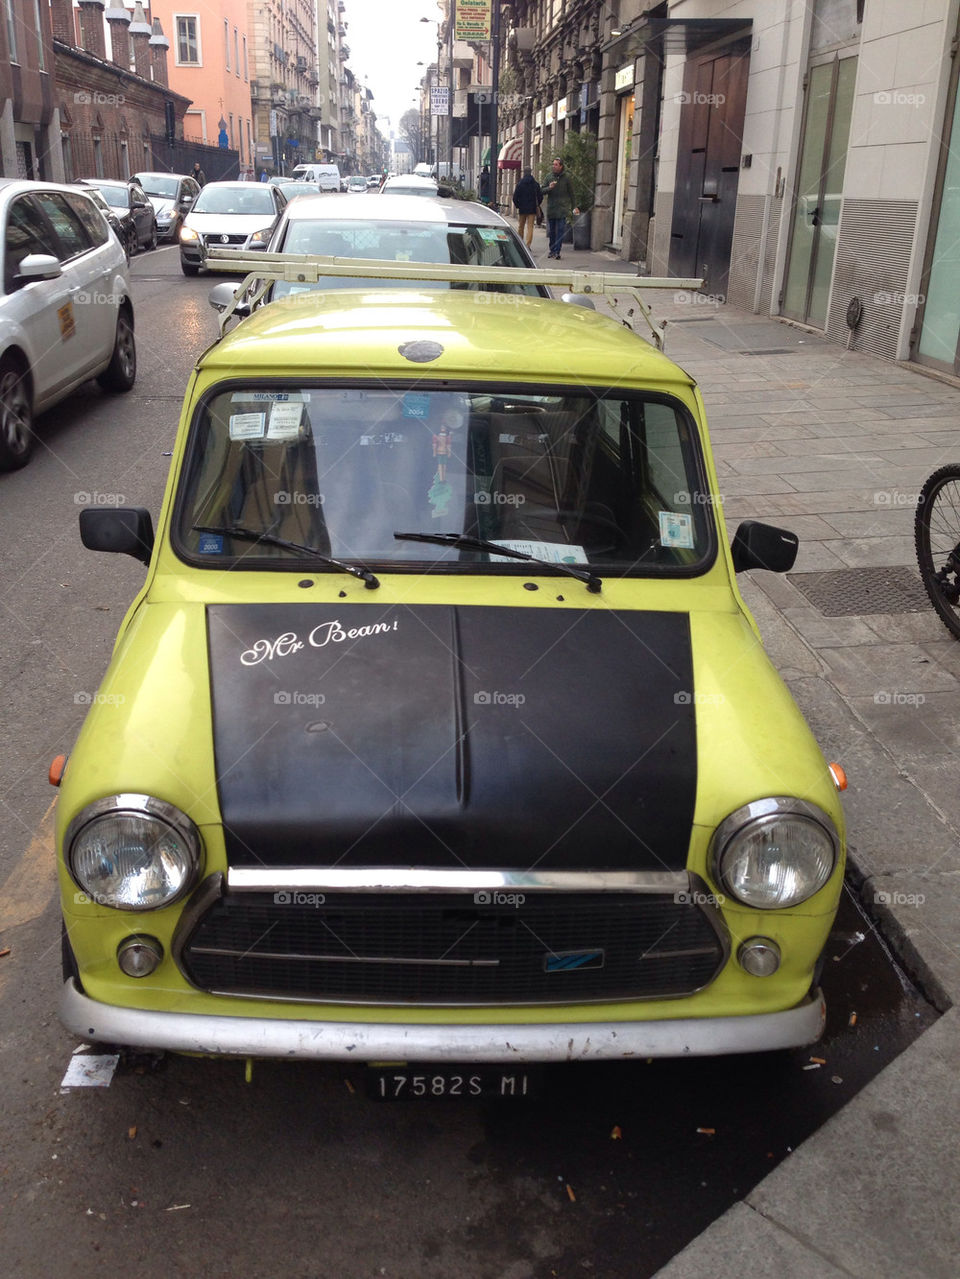 Mr Bean s car